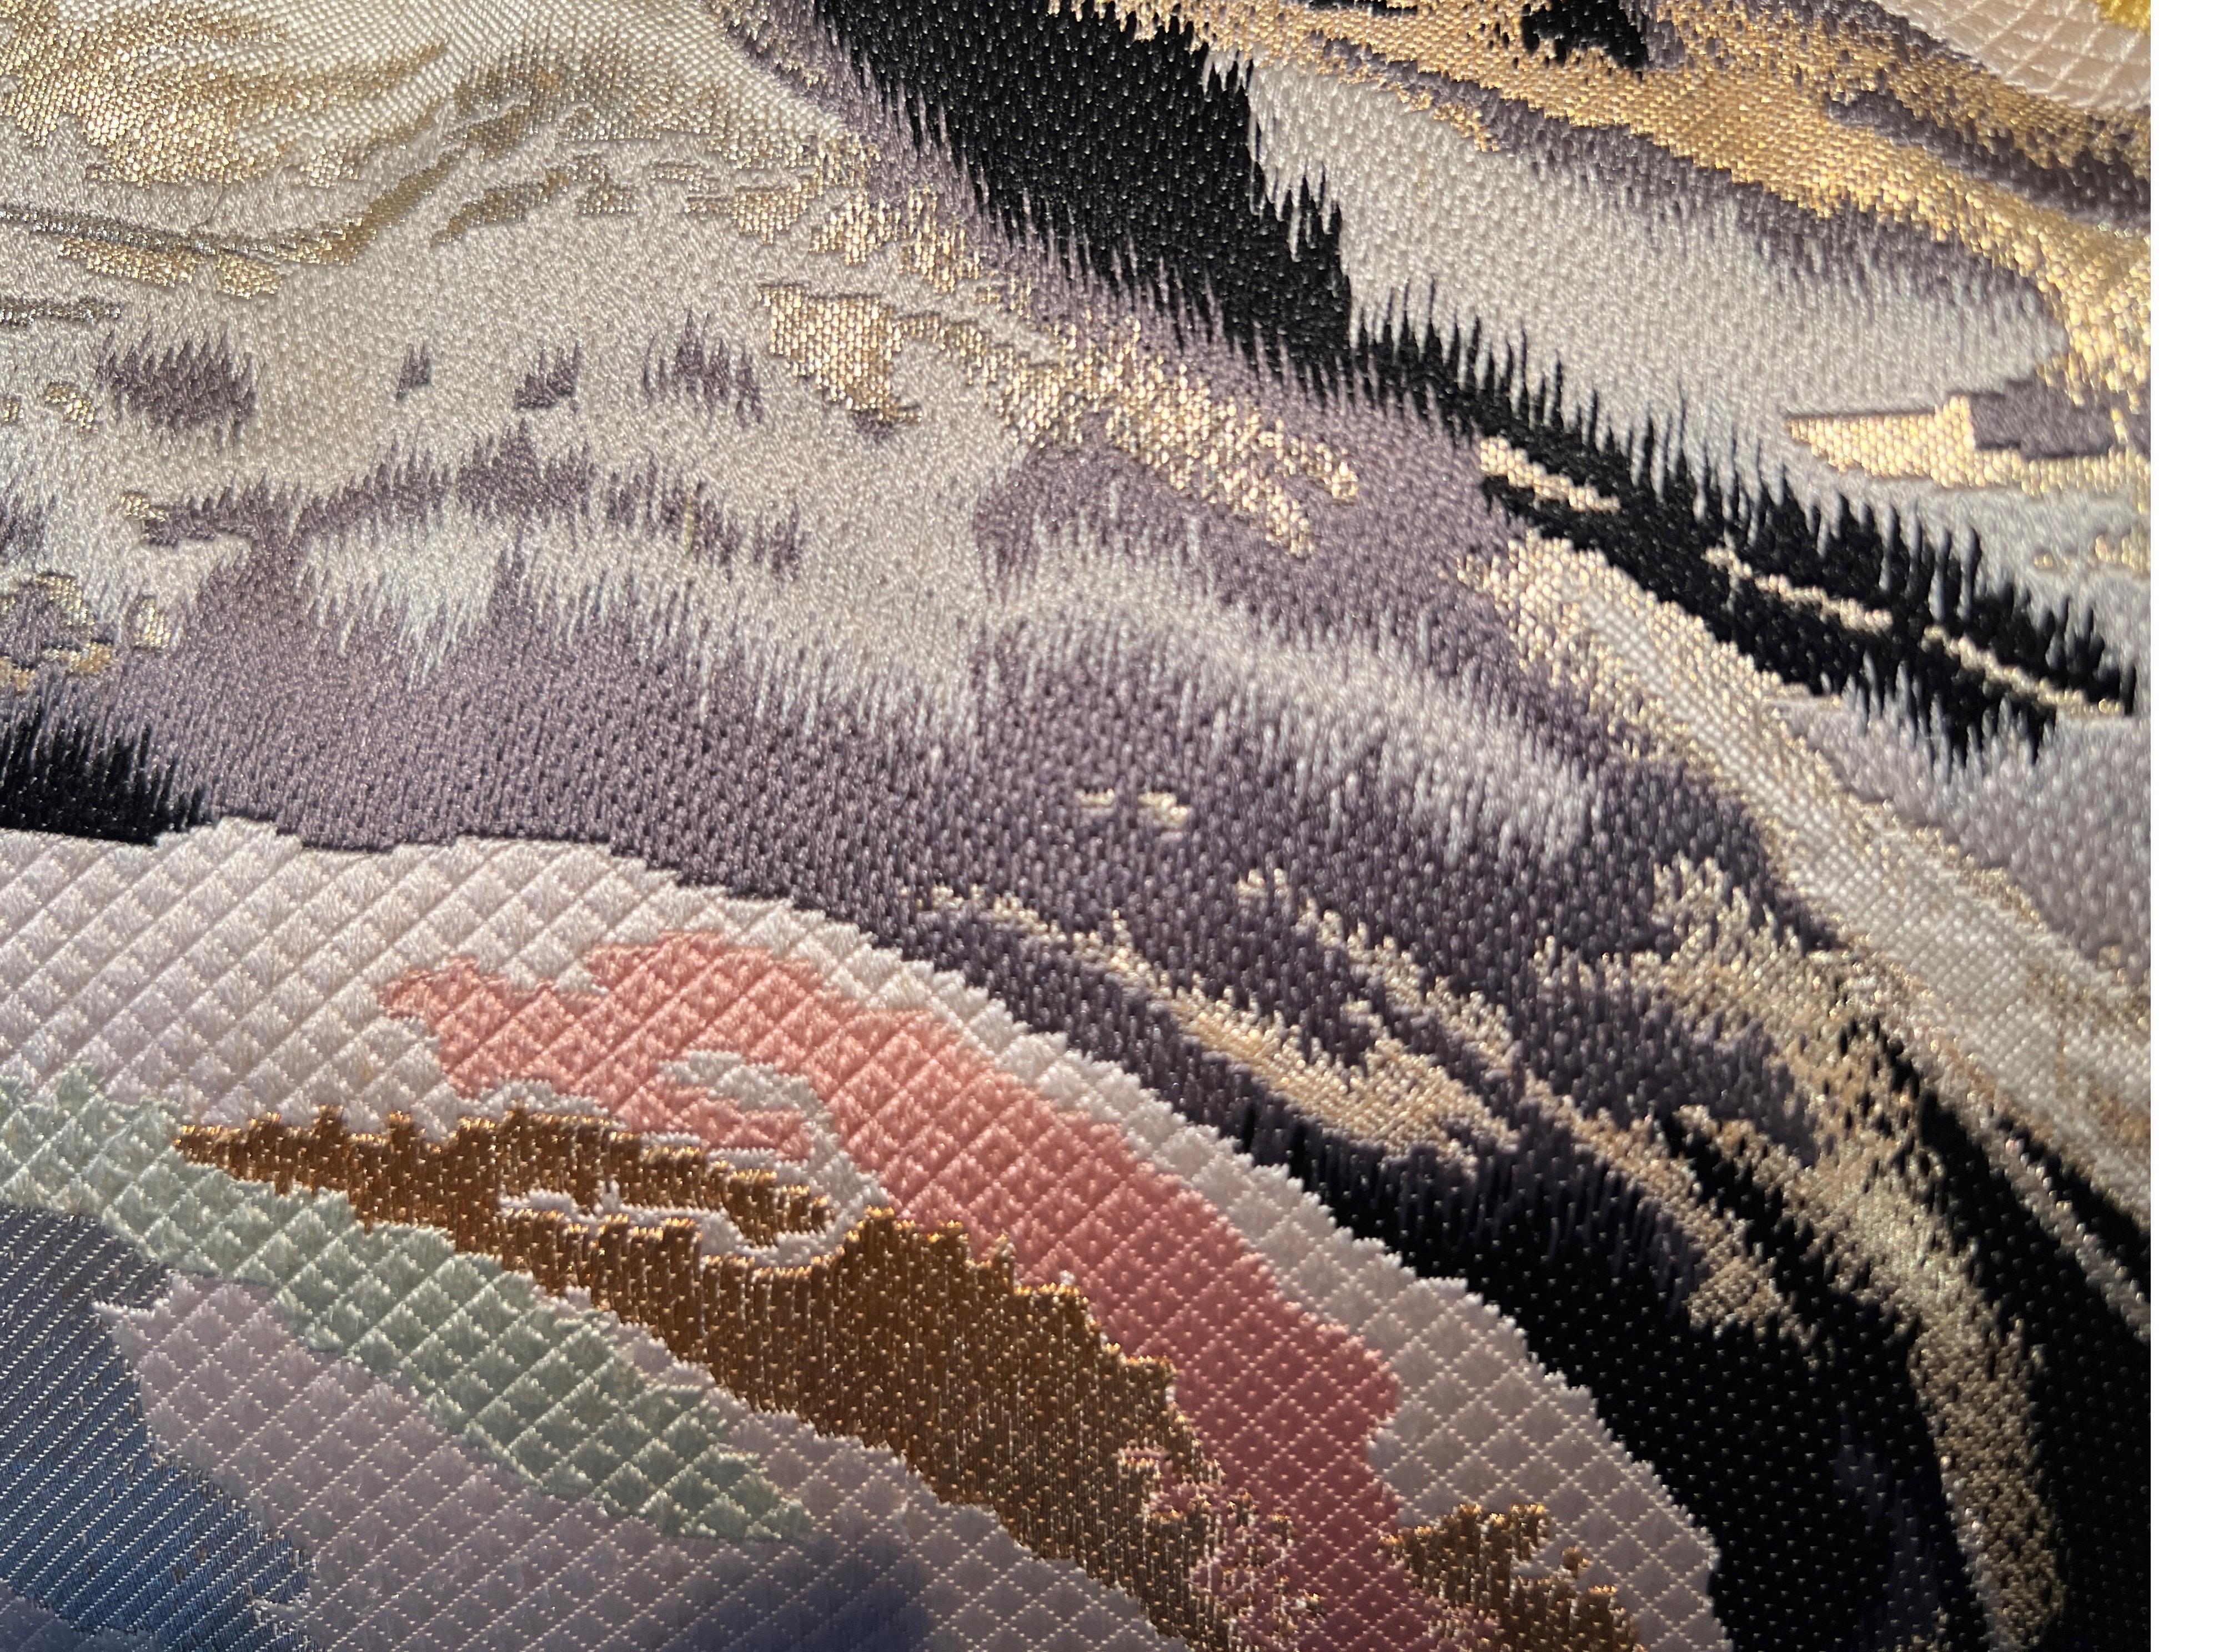 Un spectaculaire oreiller en lombar wowen en soie et fils métalliques.

Acheter des coussins faits main chez Sinapango Interiors Paris, confectionnés à partir de soie Obi vintage fabriquée dans le quartier de Nishijin à Kyoto au Japon, c'est non